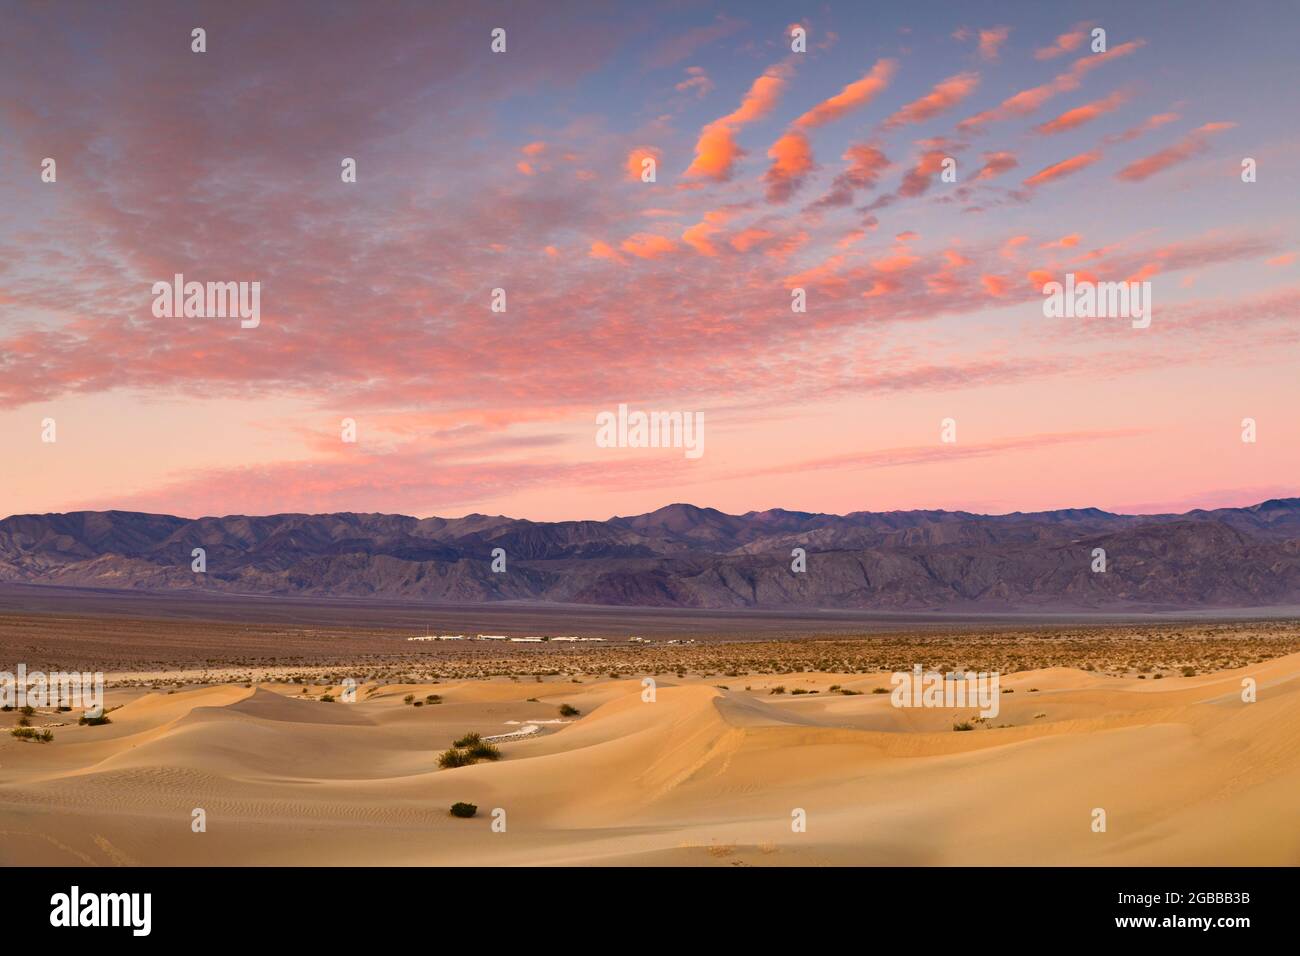 Dunes de sable de Mesquite Flat au lever du soleil, parc national de la Vallée de la mort, Californie, États-Unis d'Amérique, Amérique du Nord Banque D'Images